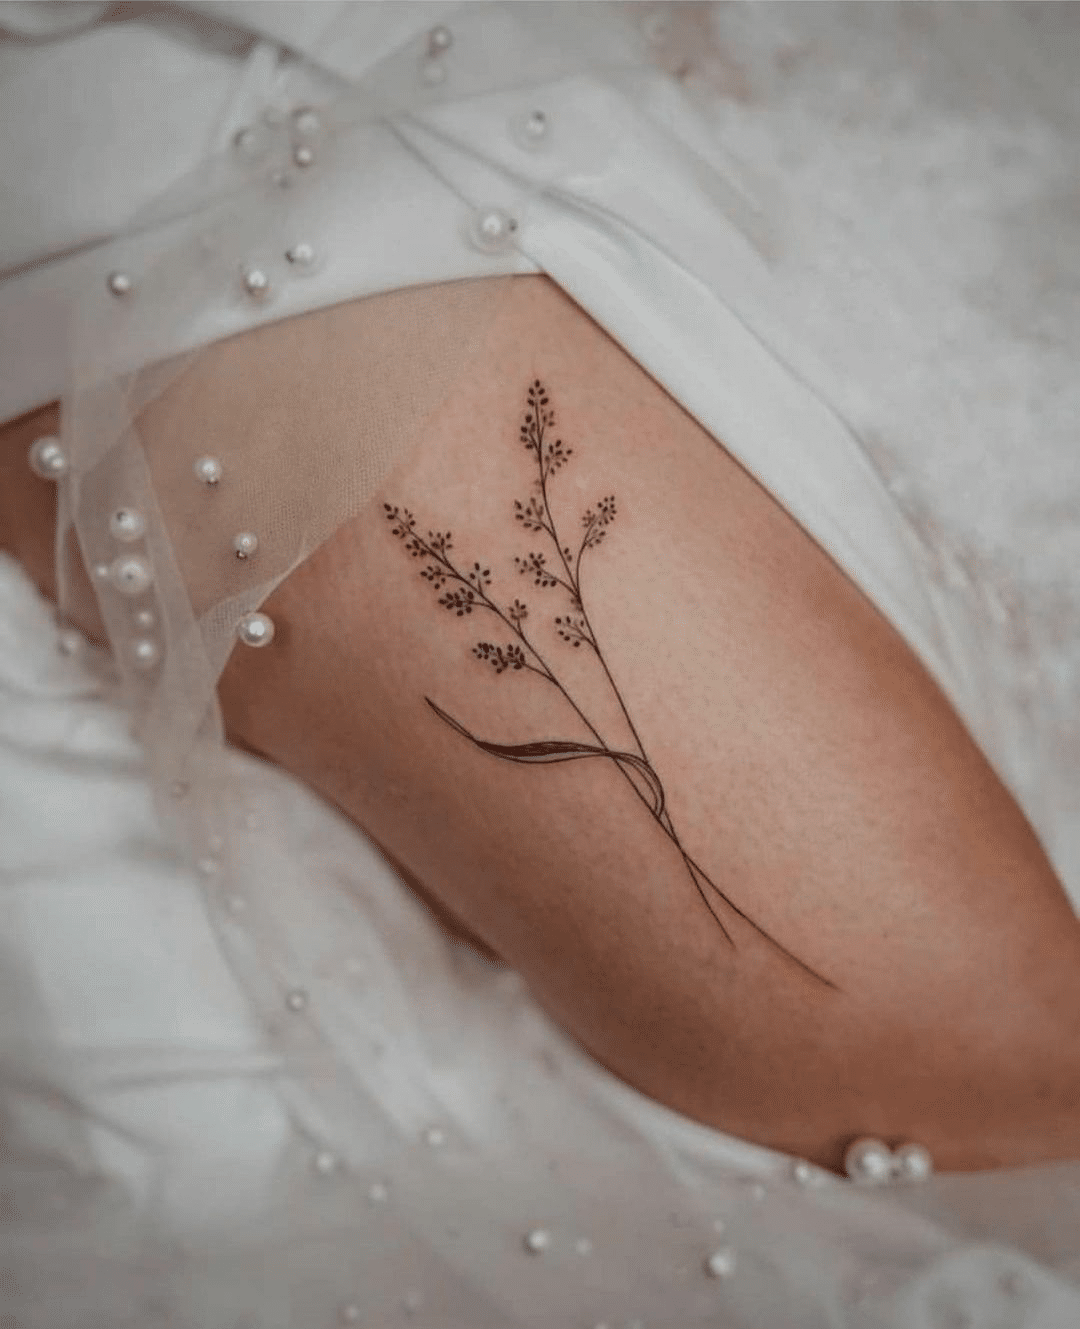 detailed ornamental leg tattoo design for women